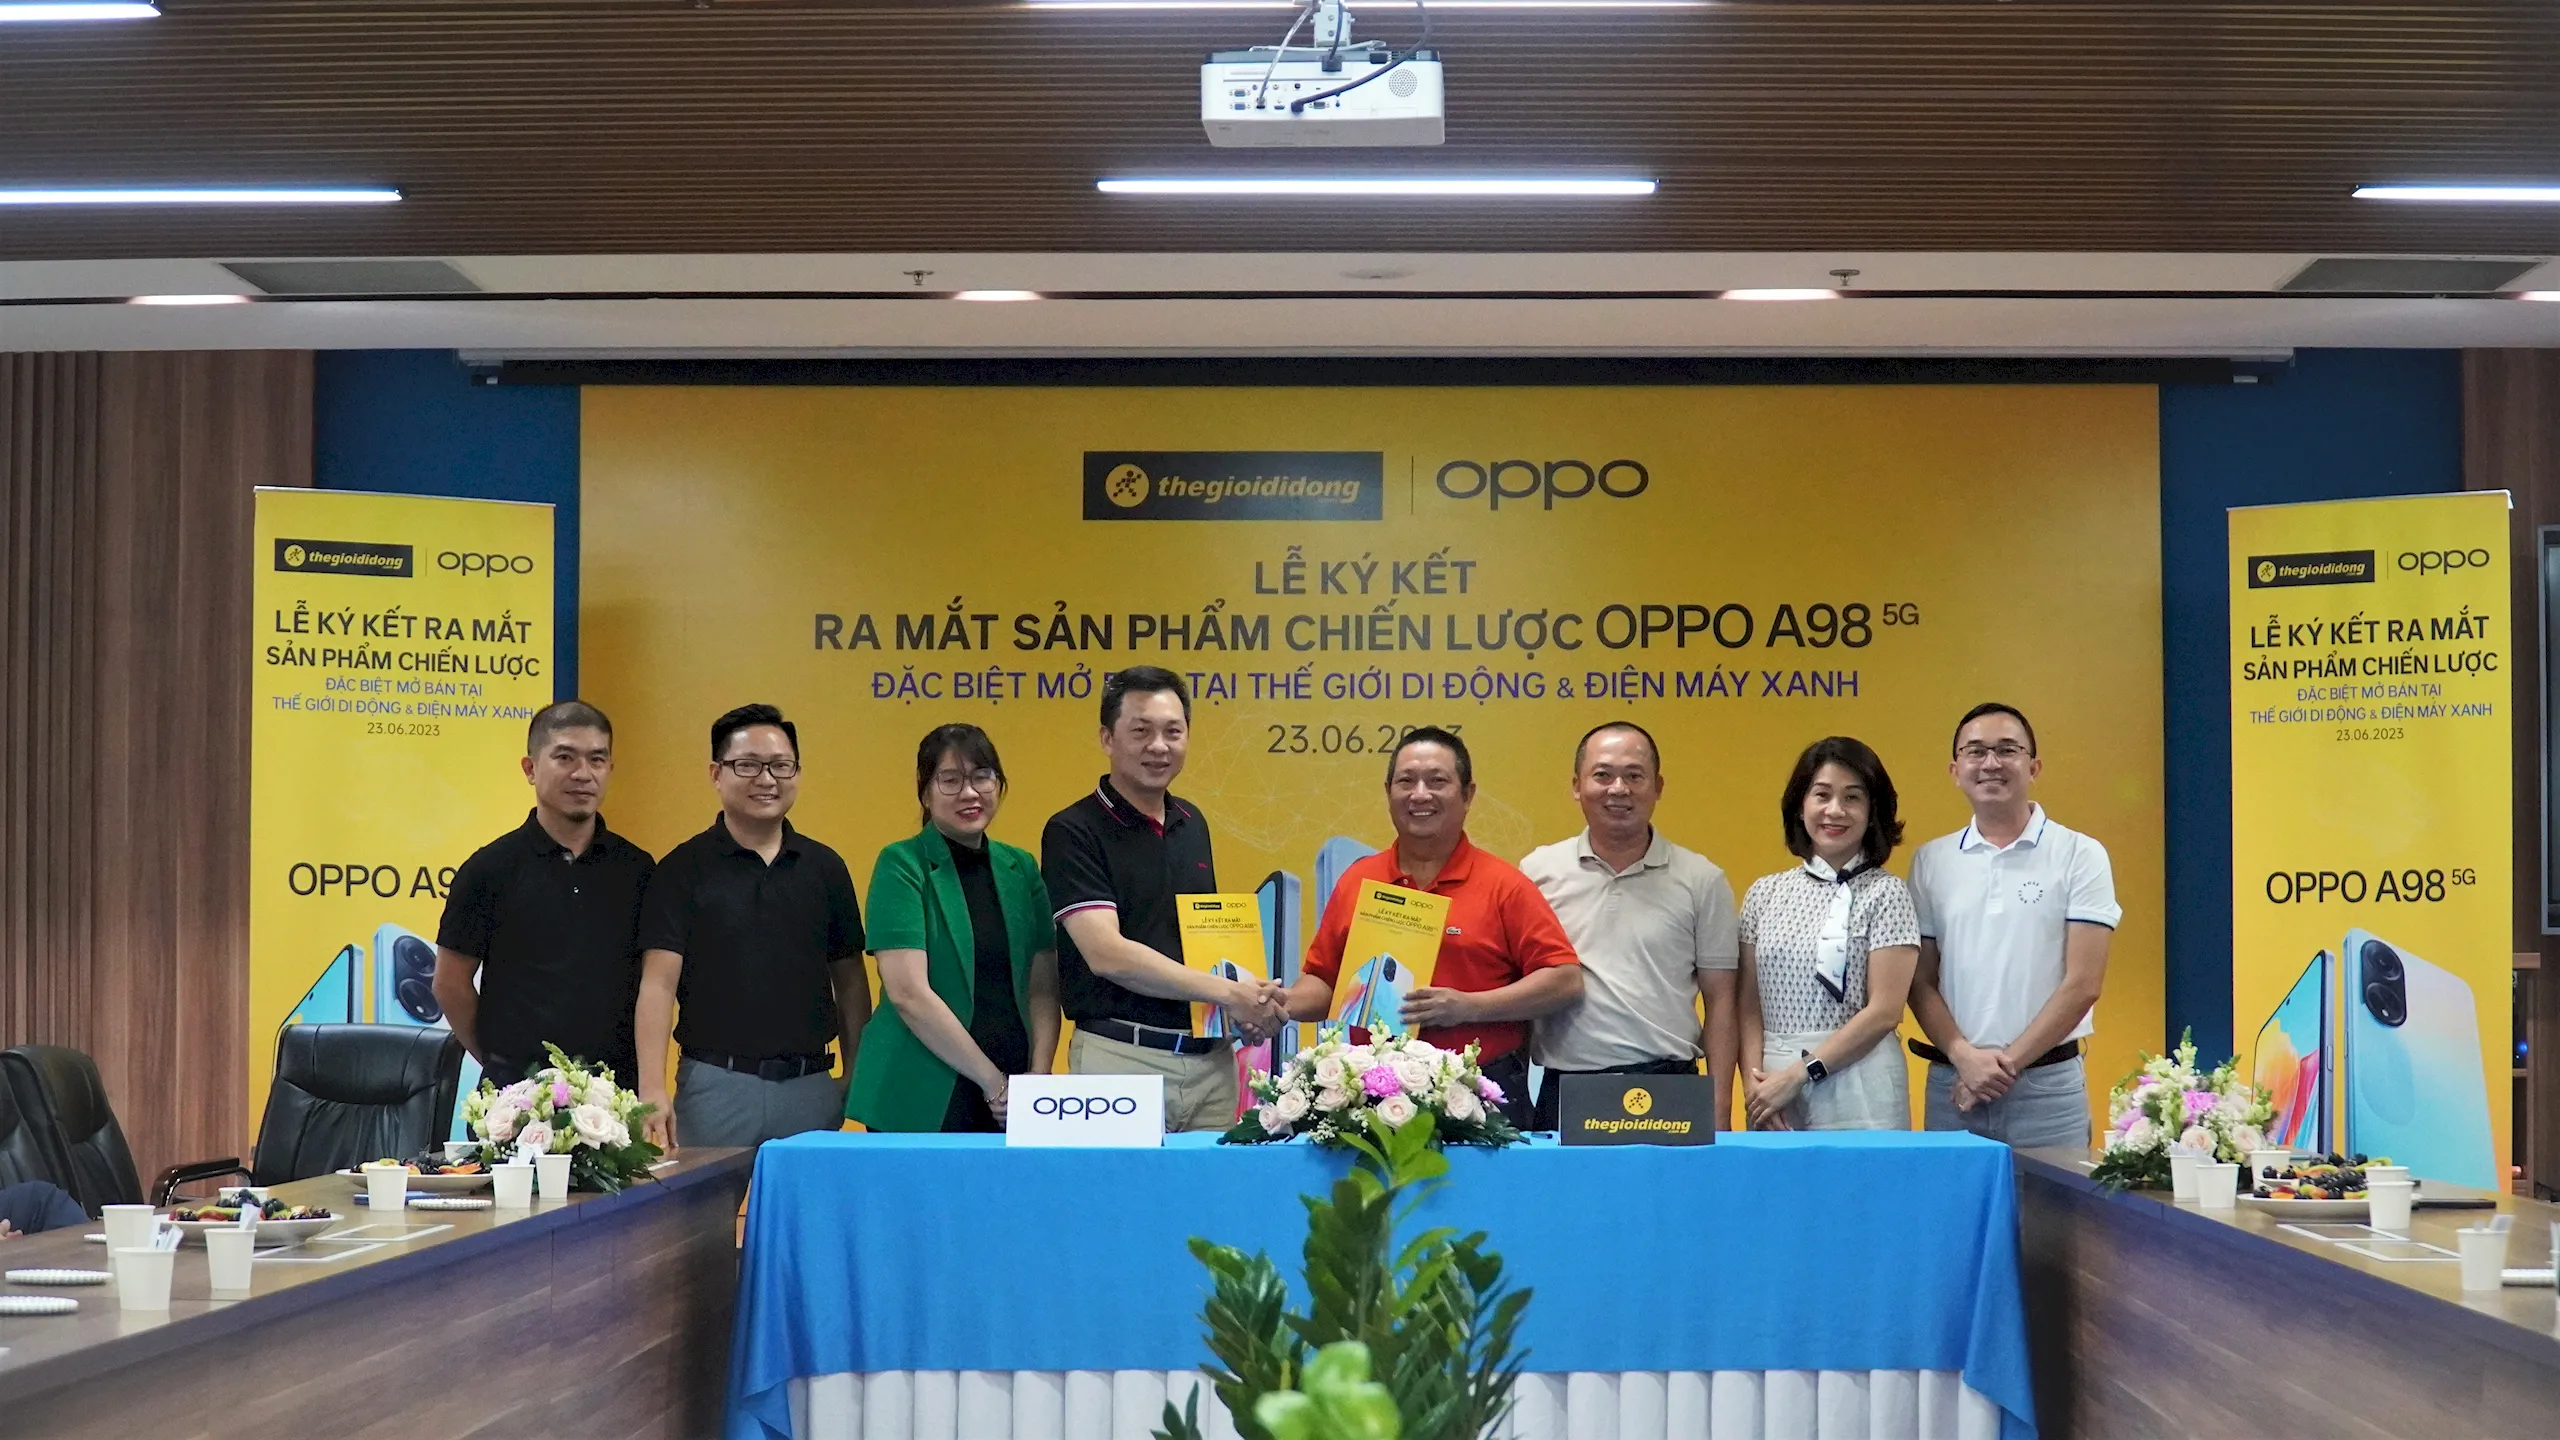 Thế Giới Di Động ký kết hợp tác chiến lược cùng OPPO, mở bán đặc biệt OPPO A98 sạc siêu nhanh, lướt siêu mượt